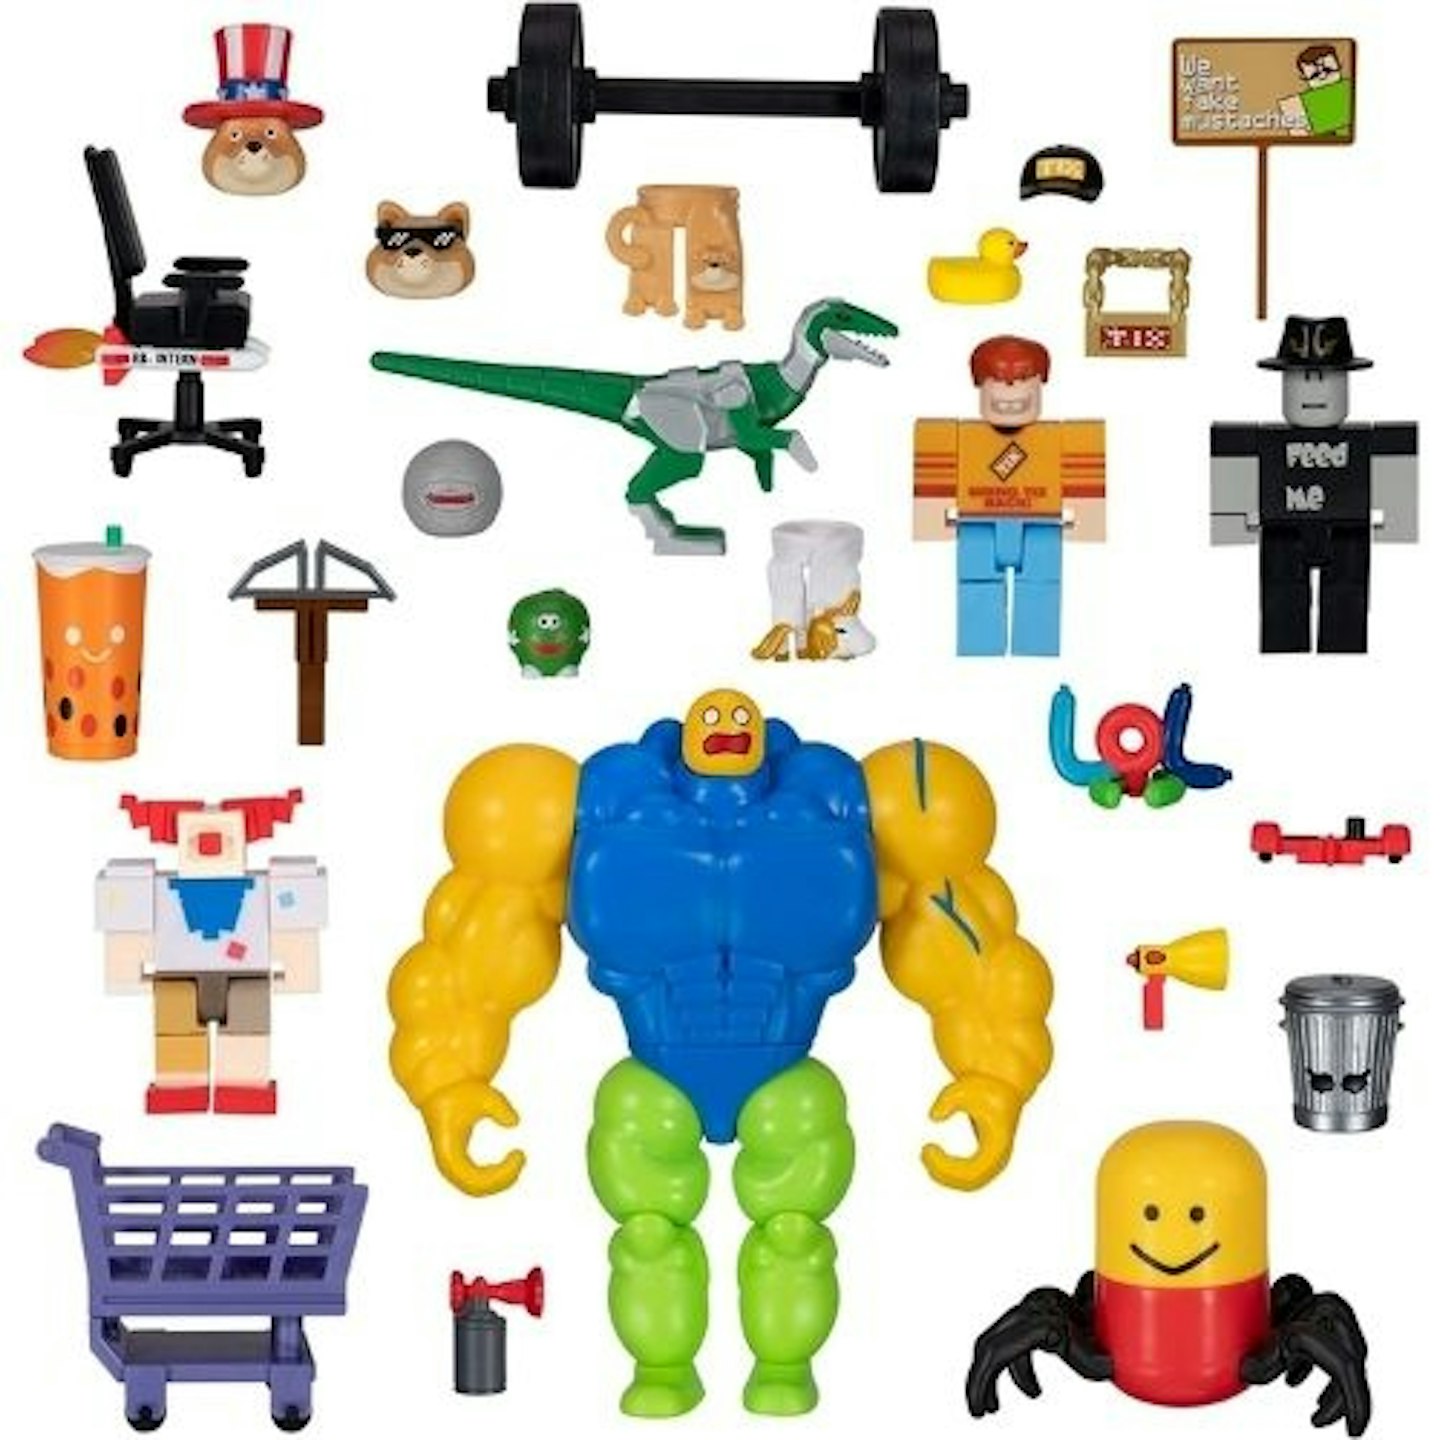 decently big lego set - Roblox